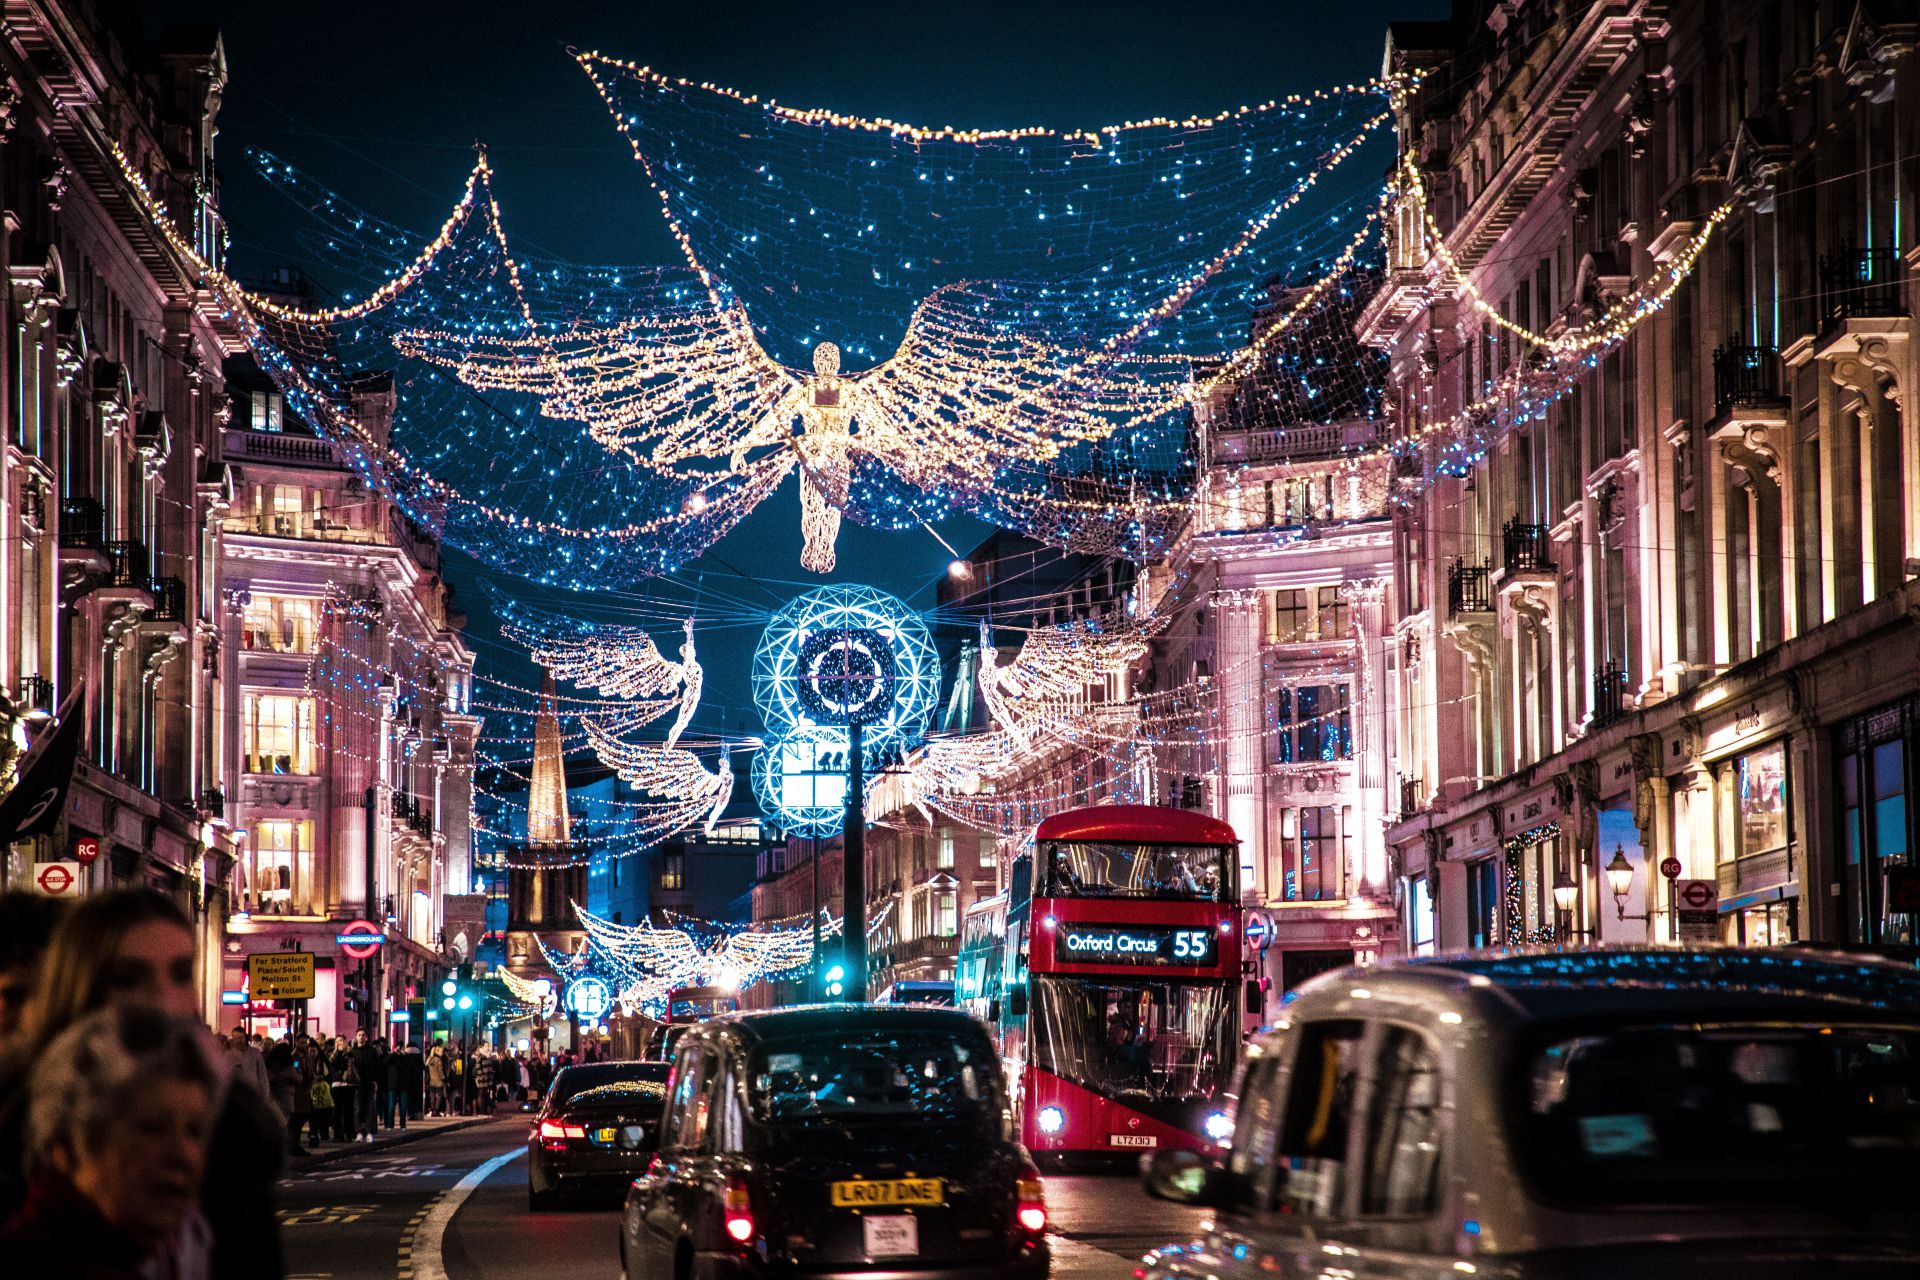 Oxford Circus Christmas Lights Unsplash